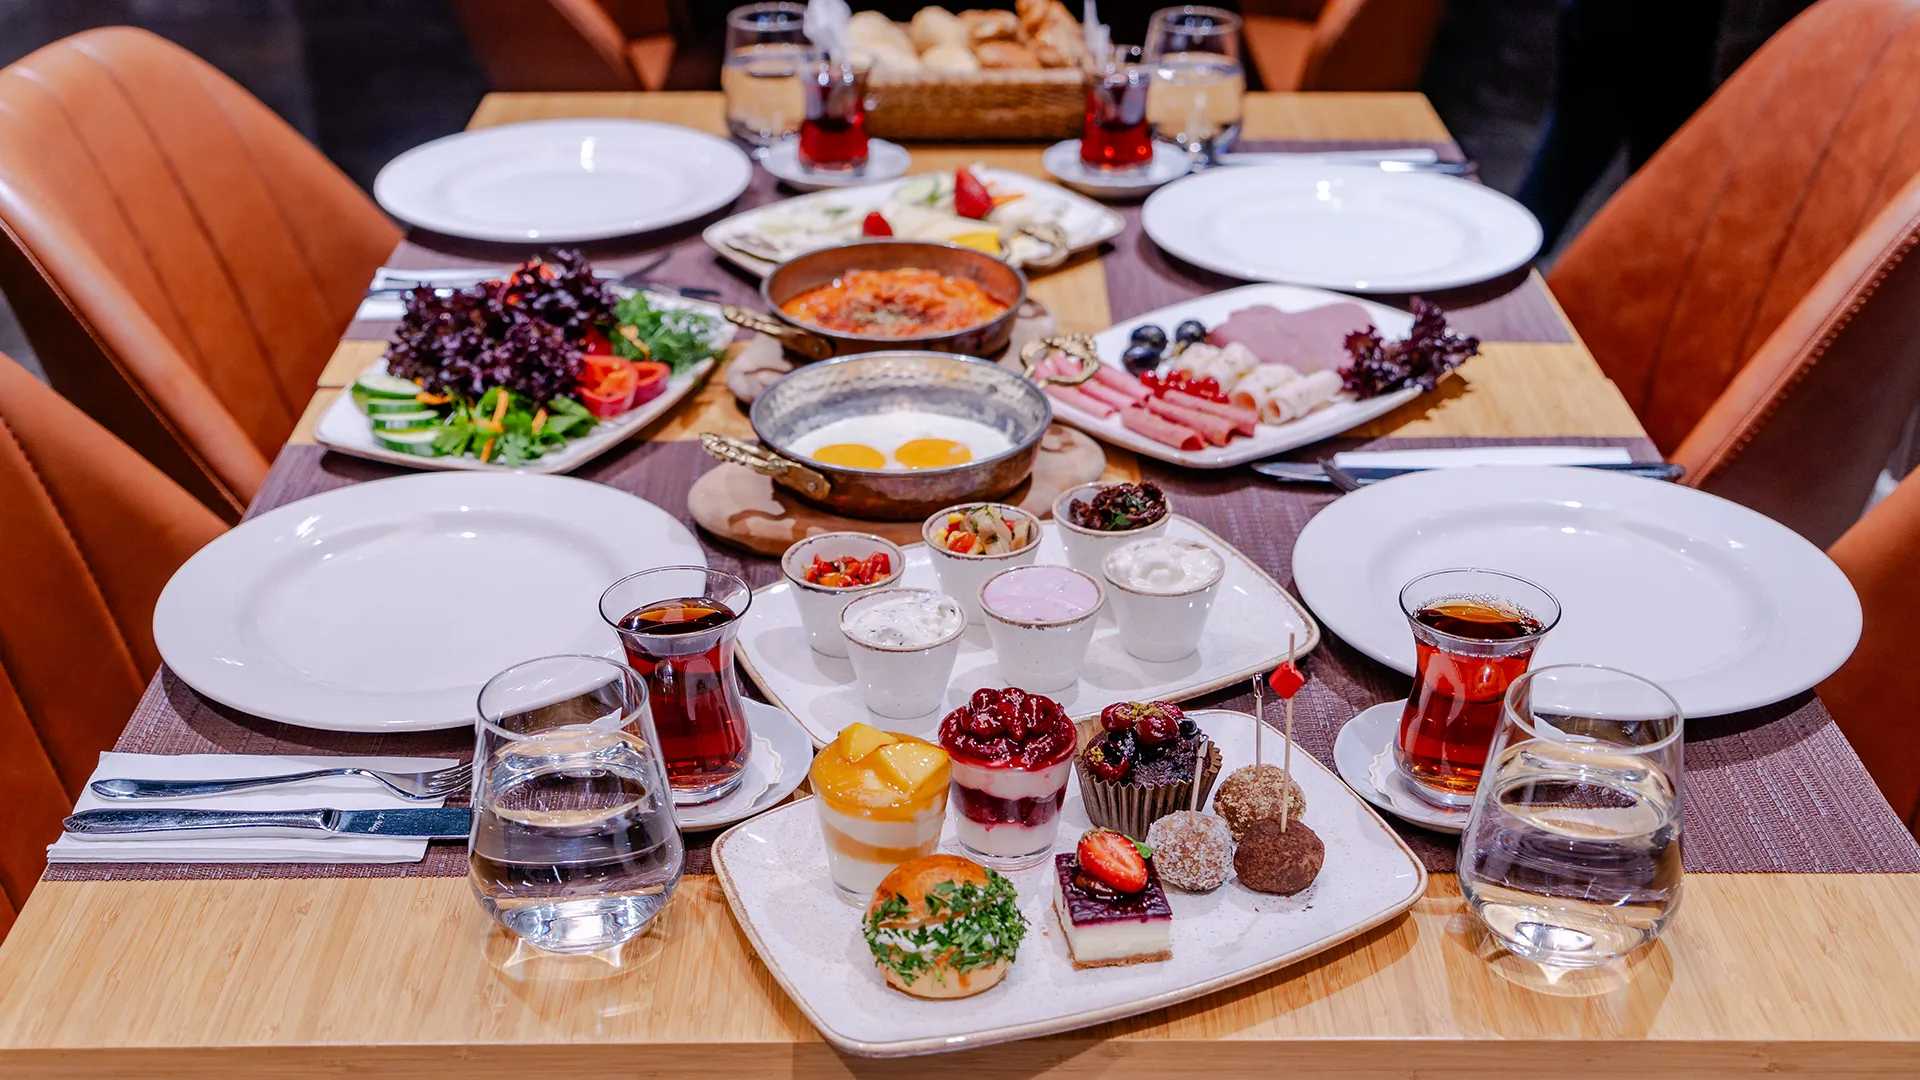 एक टेबल जिसमें विभिन्न प्रकार की तुर्की सुबह की विशेषताएँ और एक उबालती हुई टर्किश चाय की एक कप है।